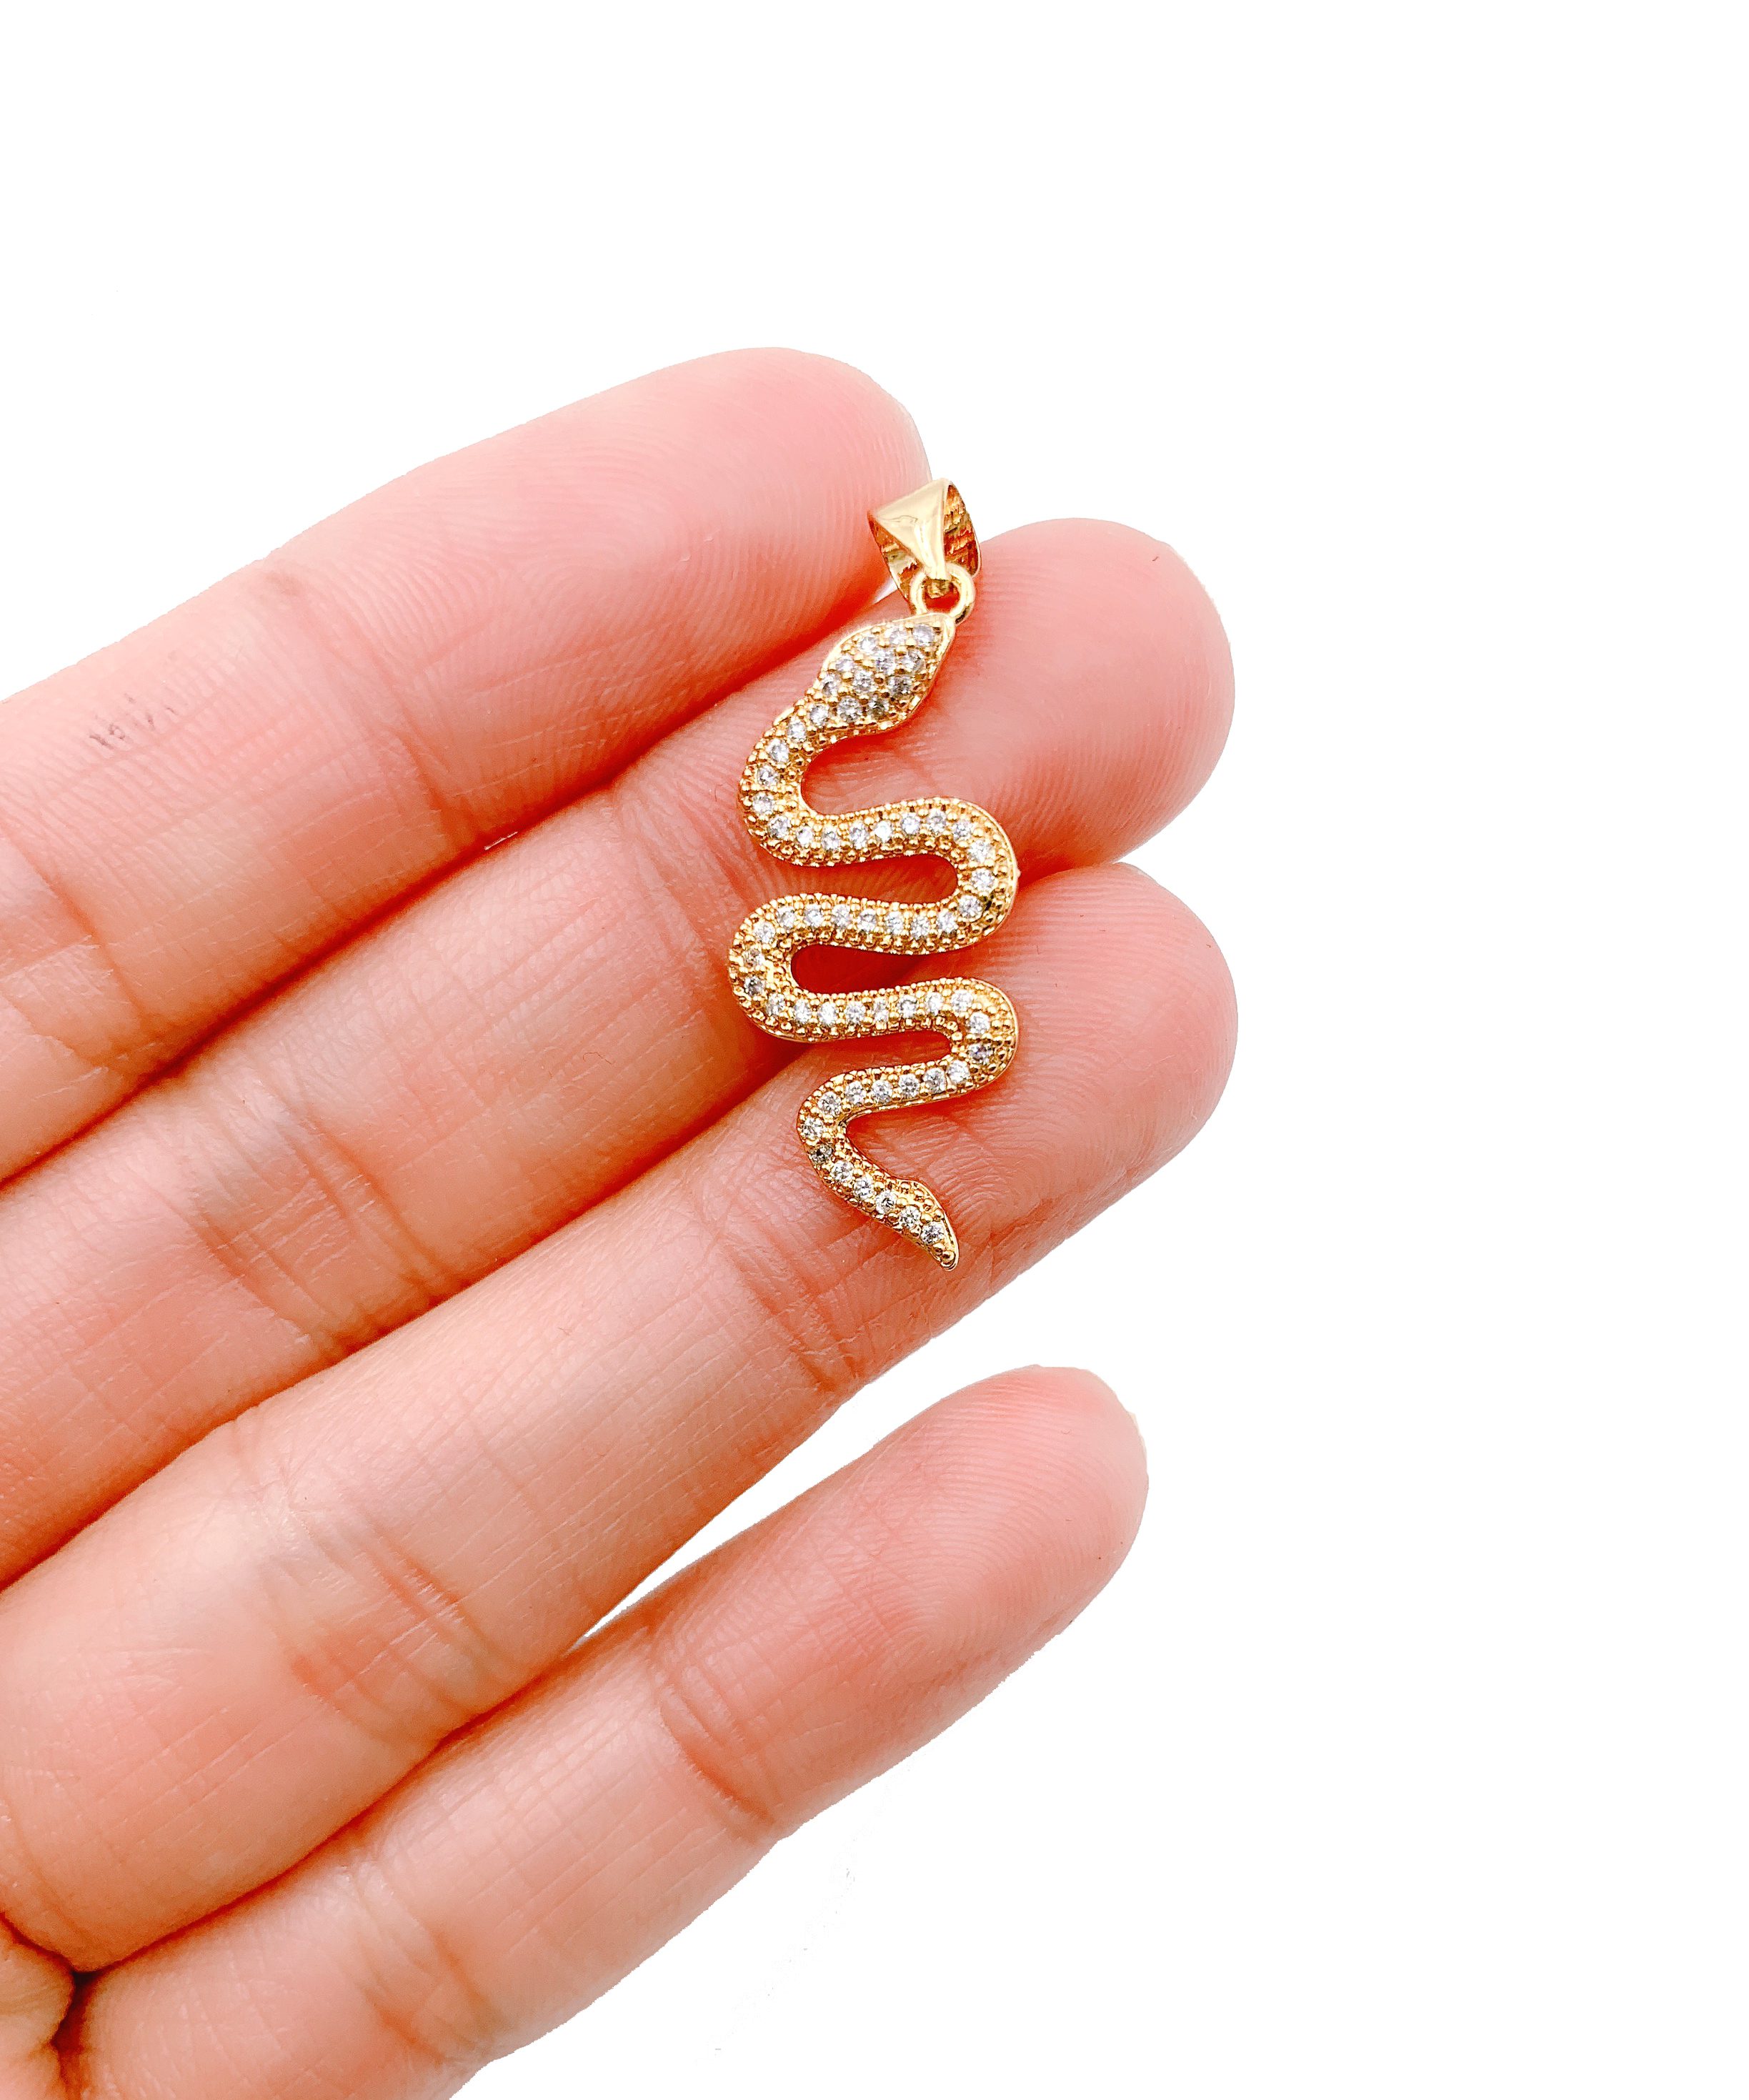 Snake Necklace CZ Snake Necklace Serpent Silver Snake Jewelry 